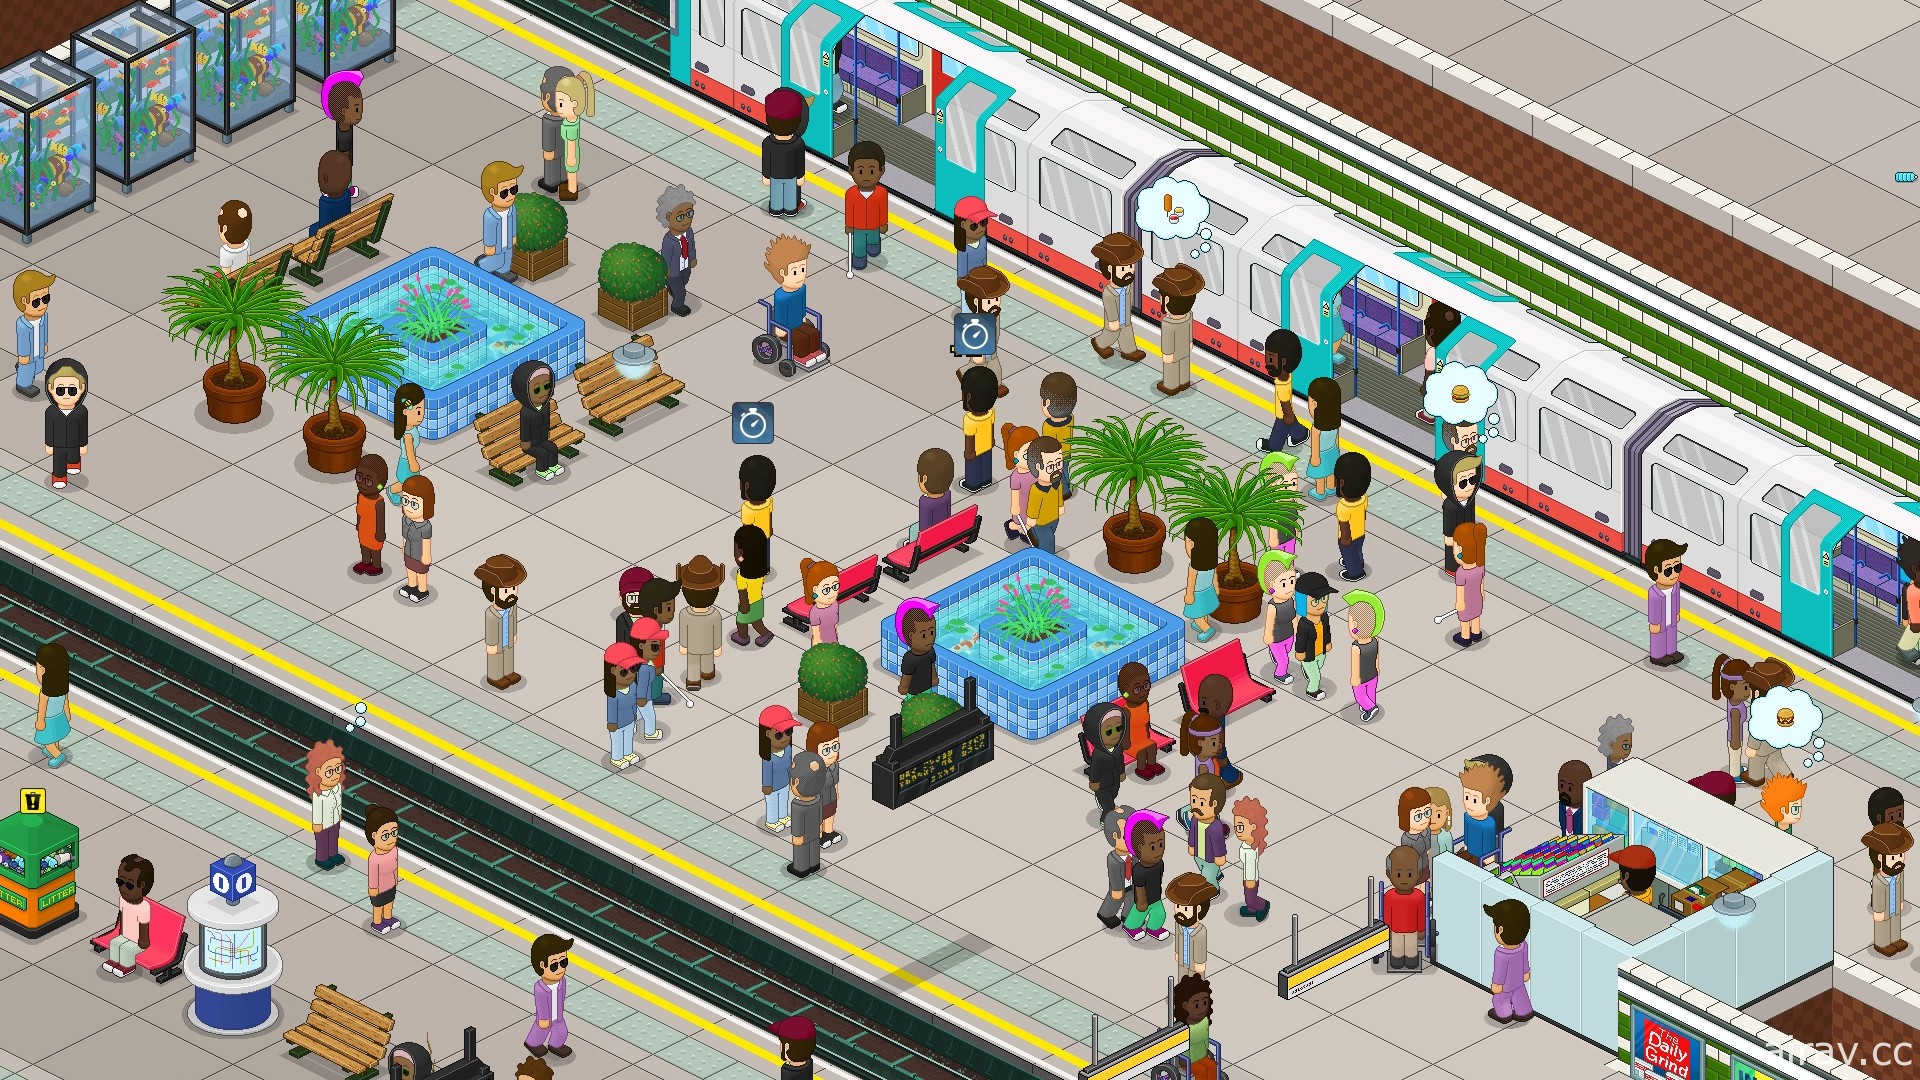 地铁题材模拟新作《通勤地铁战》1.0 版正式上市 新增多种乘客角色、员工制服等功能